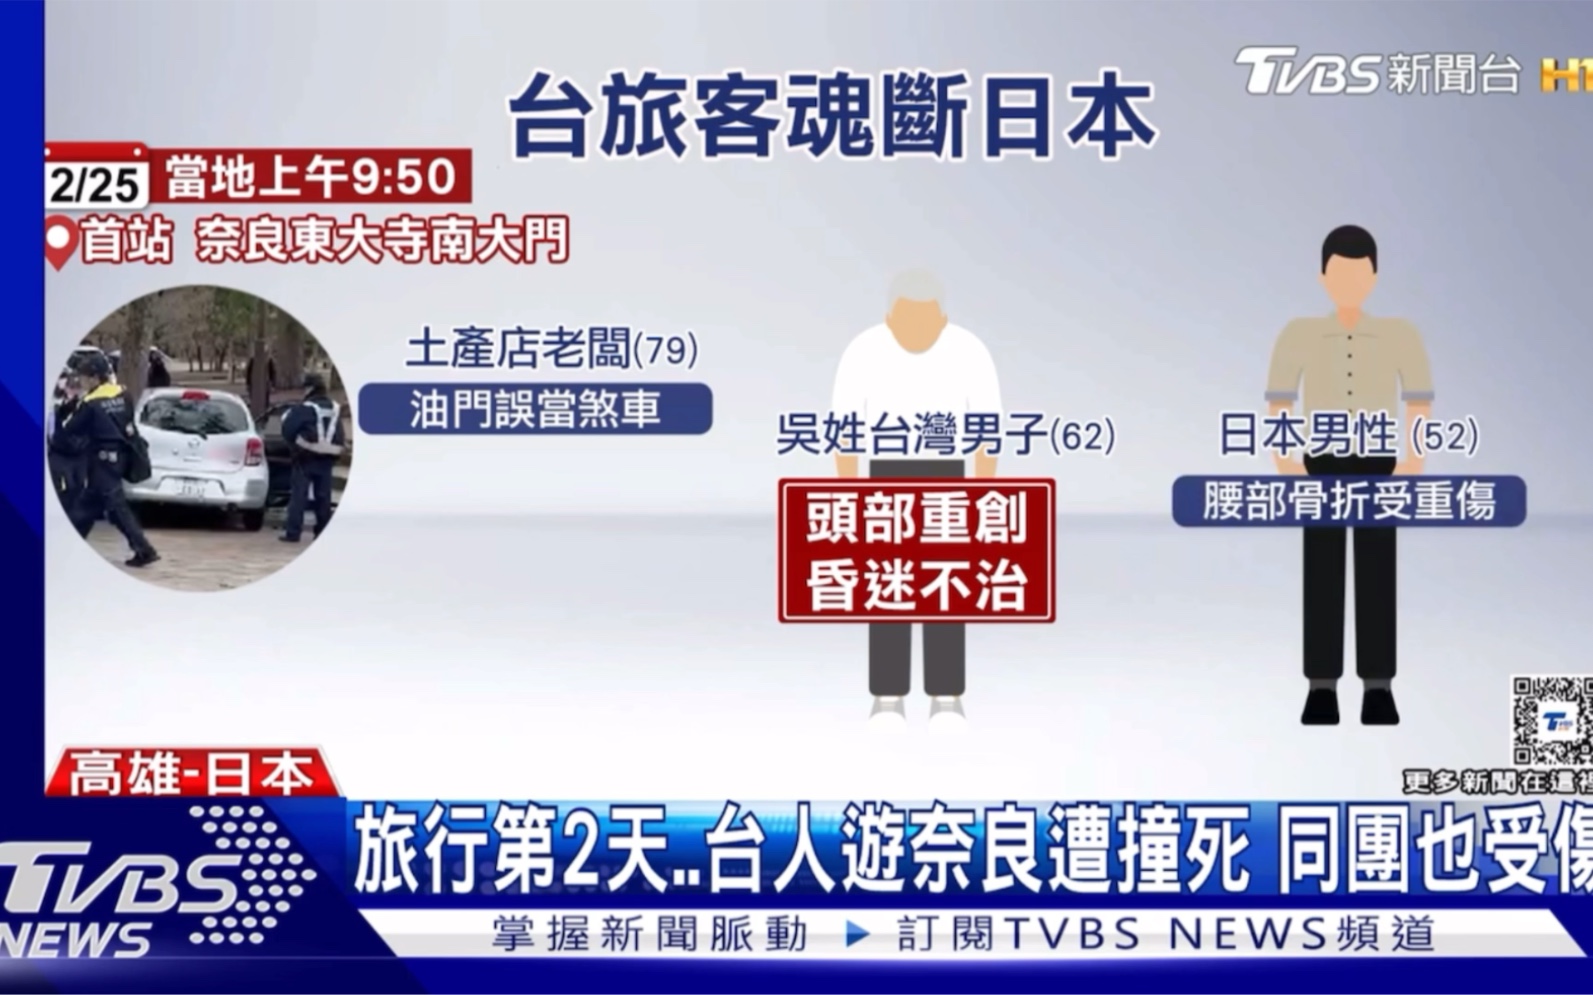 (tvbs新闻台)日本奈良发生交通意外一名62岁台湾男游客死亡